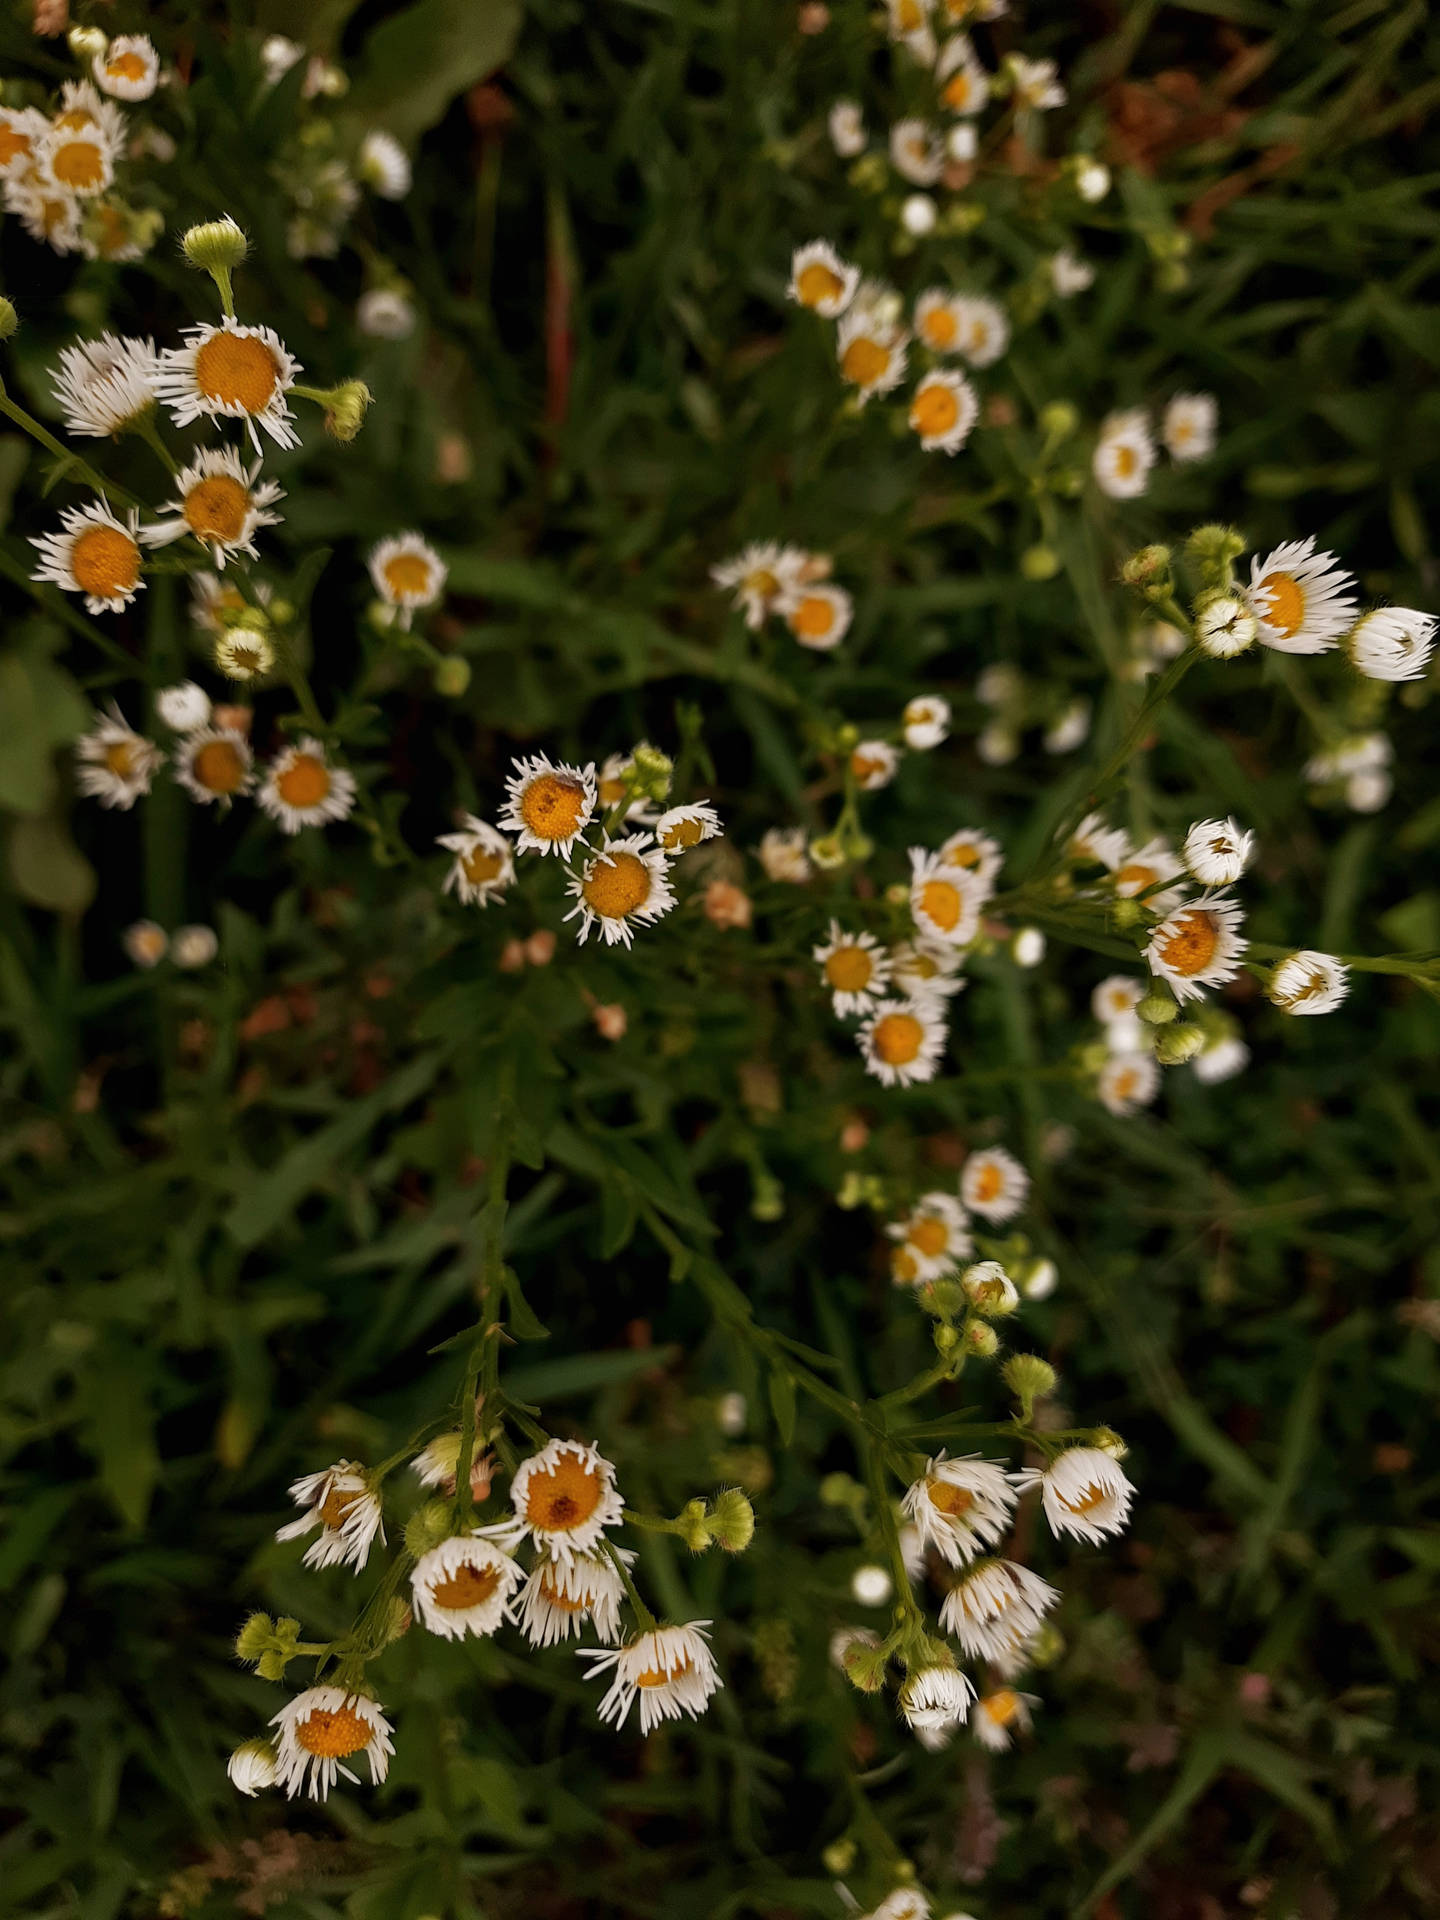  White Flower Grass Cottagecore Aesthetic